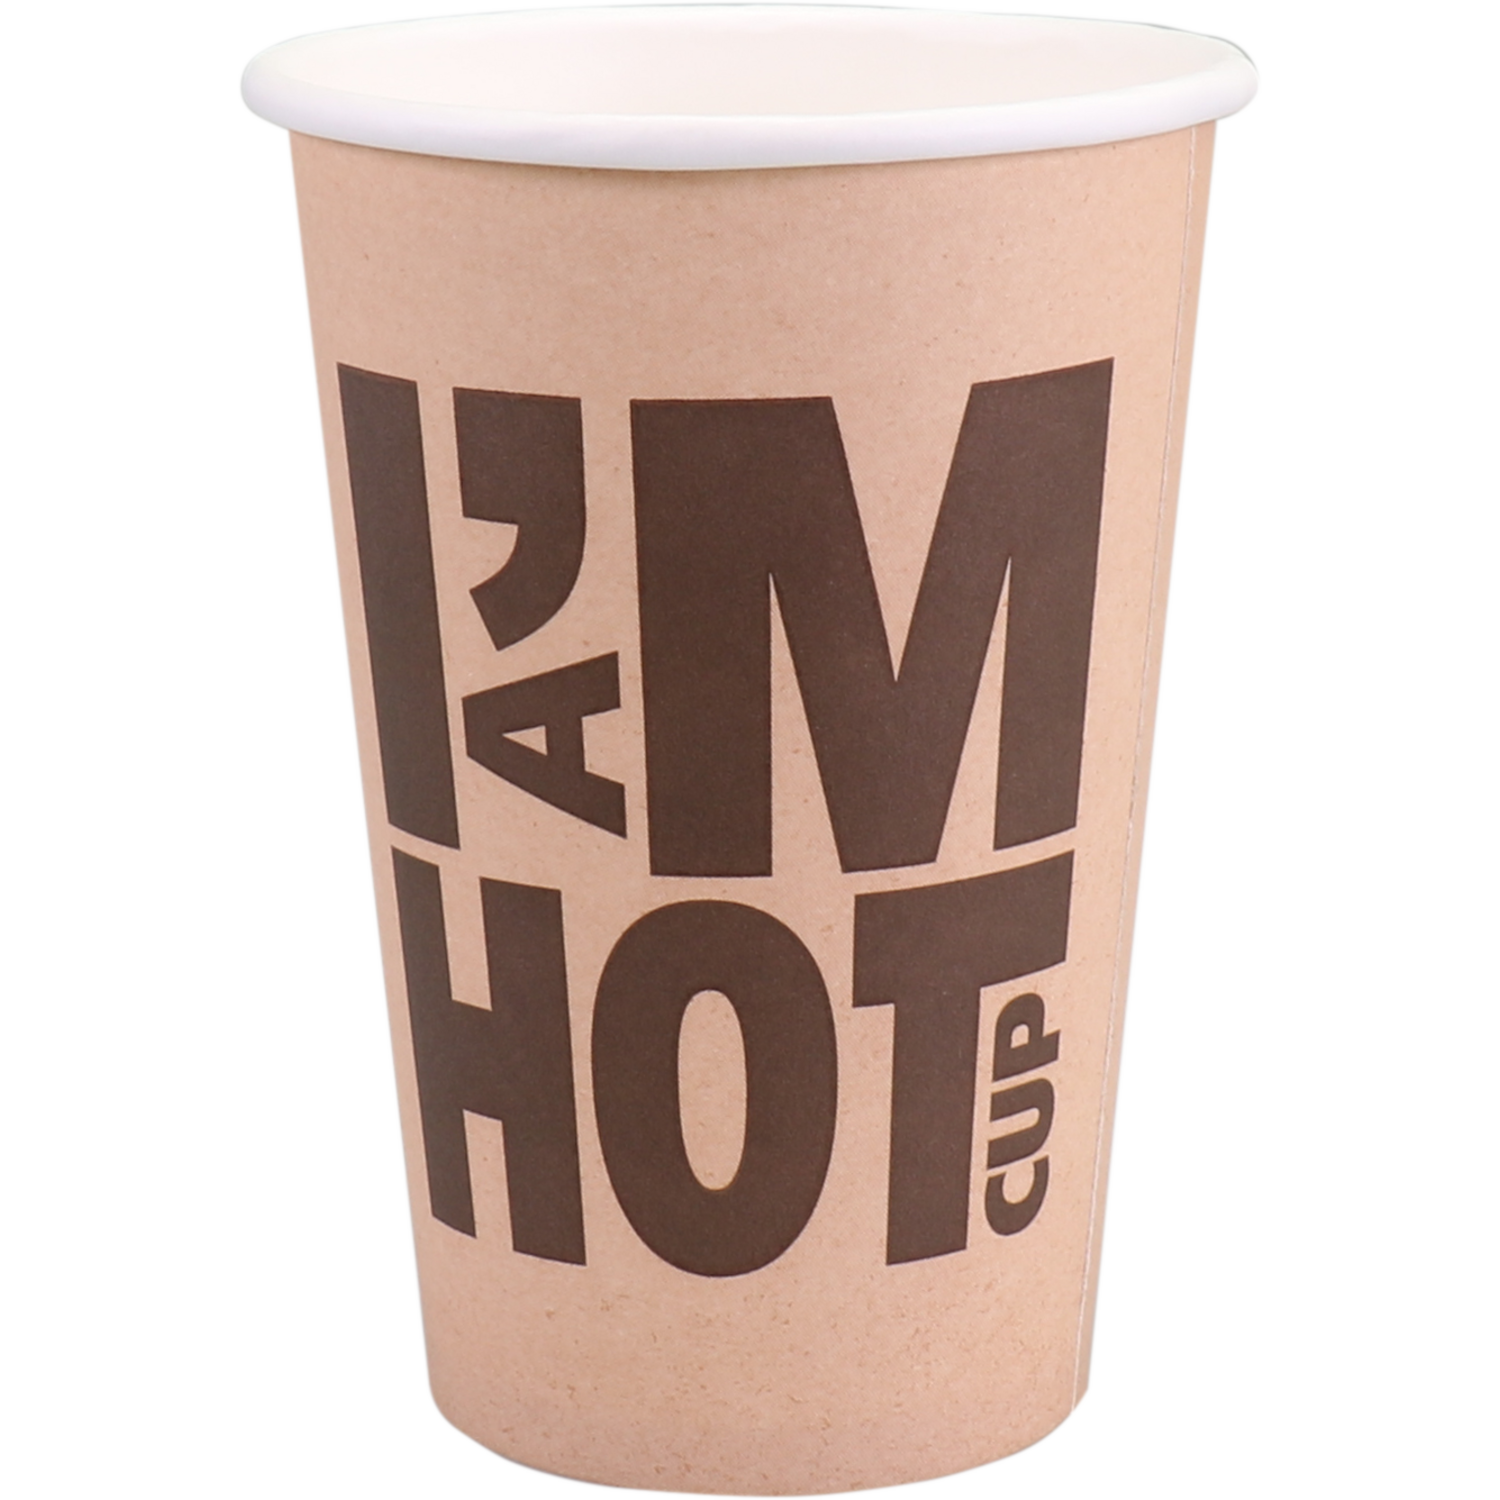 I'M Concept, Beker, I´M a HOT cup, Karton/PE, 300ml, 10oz,  1